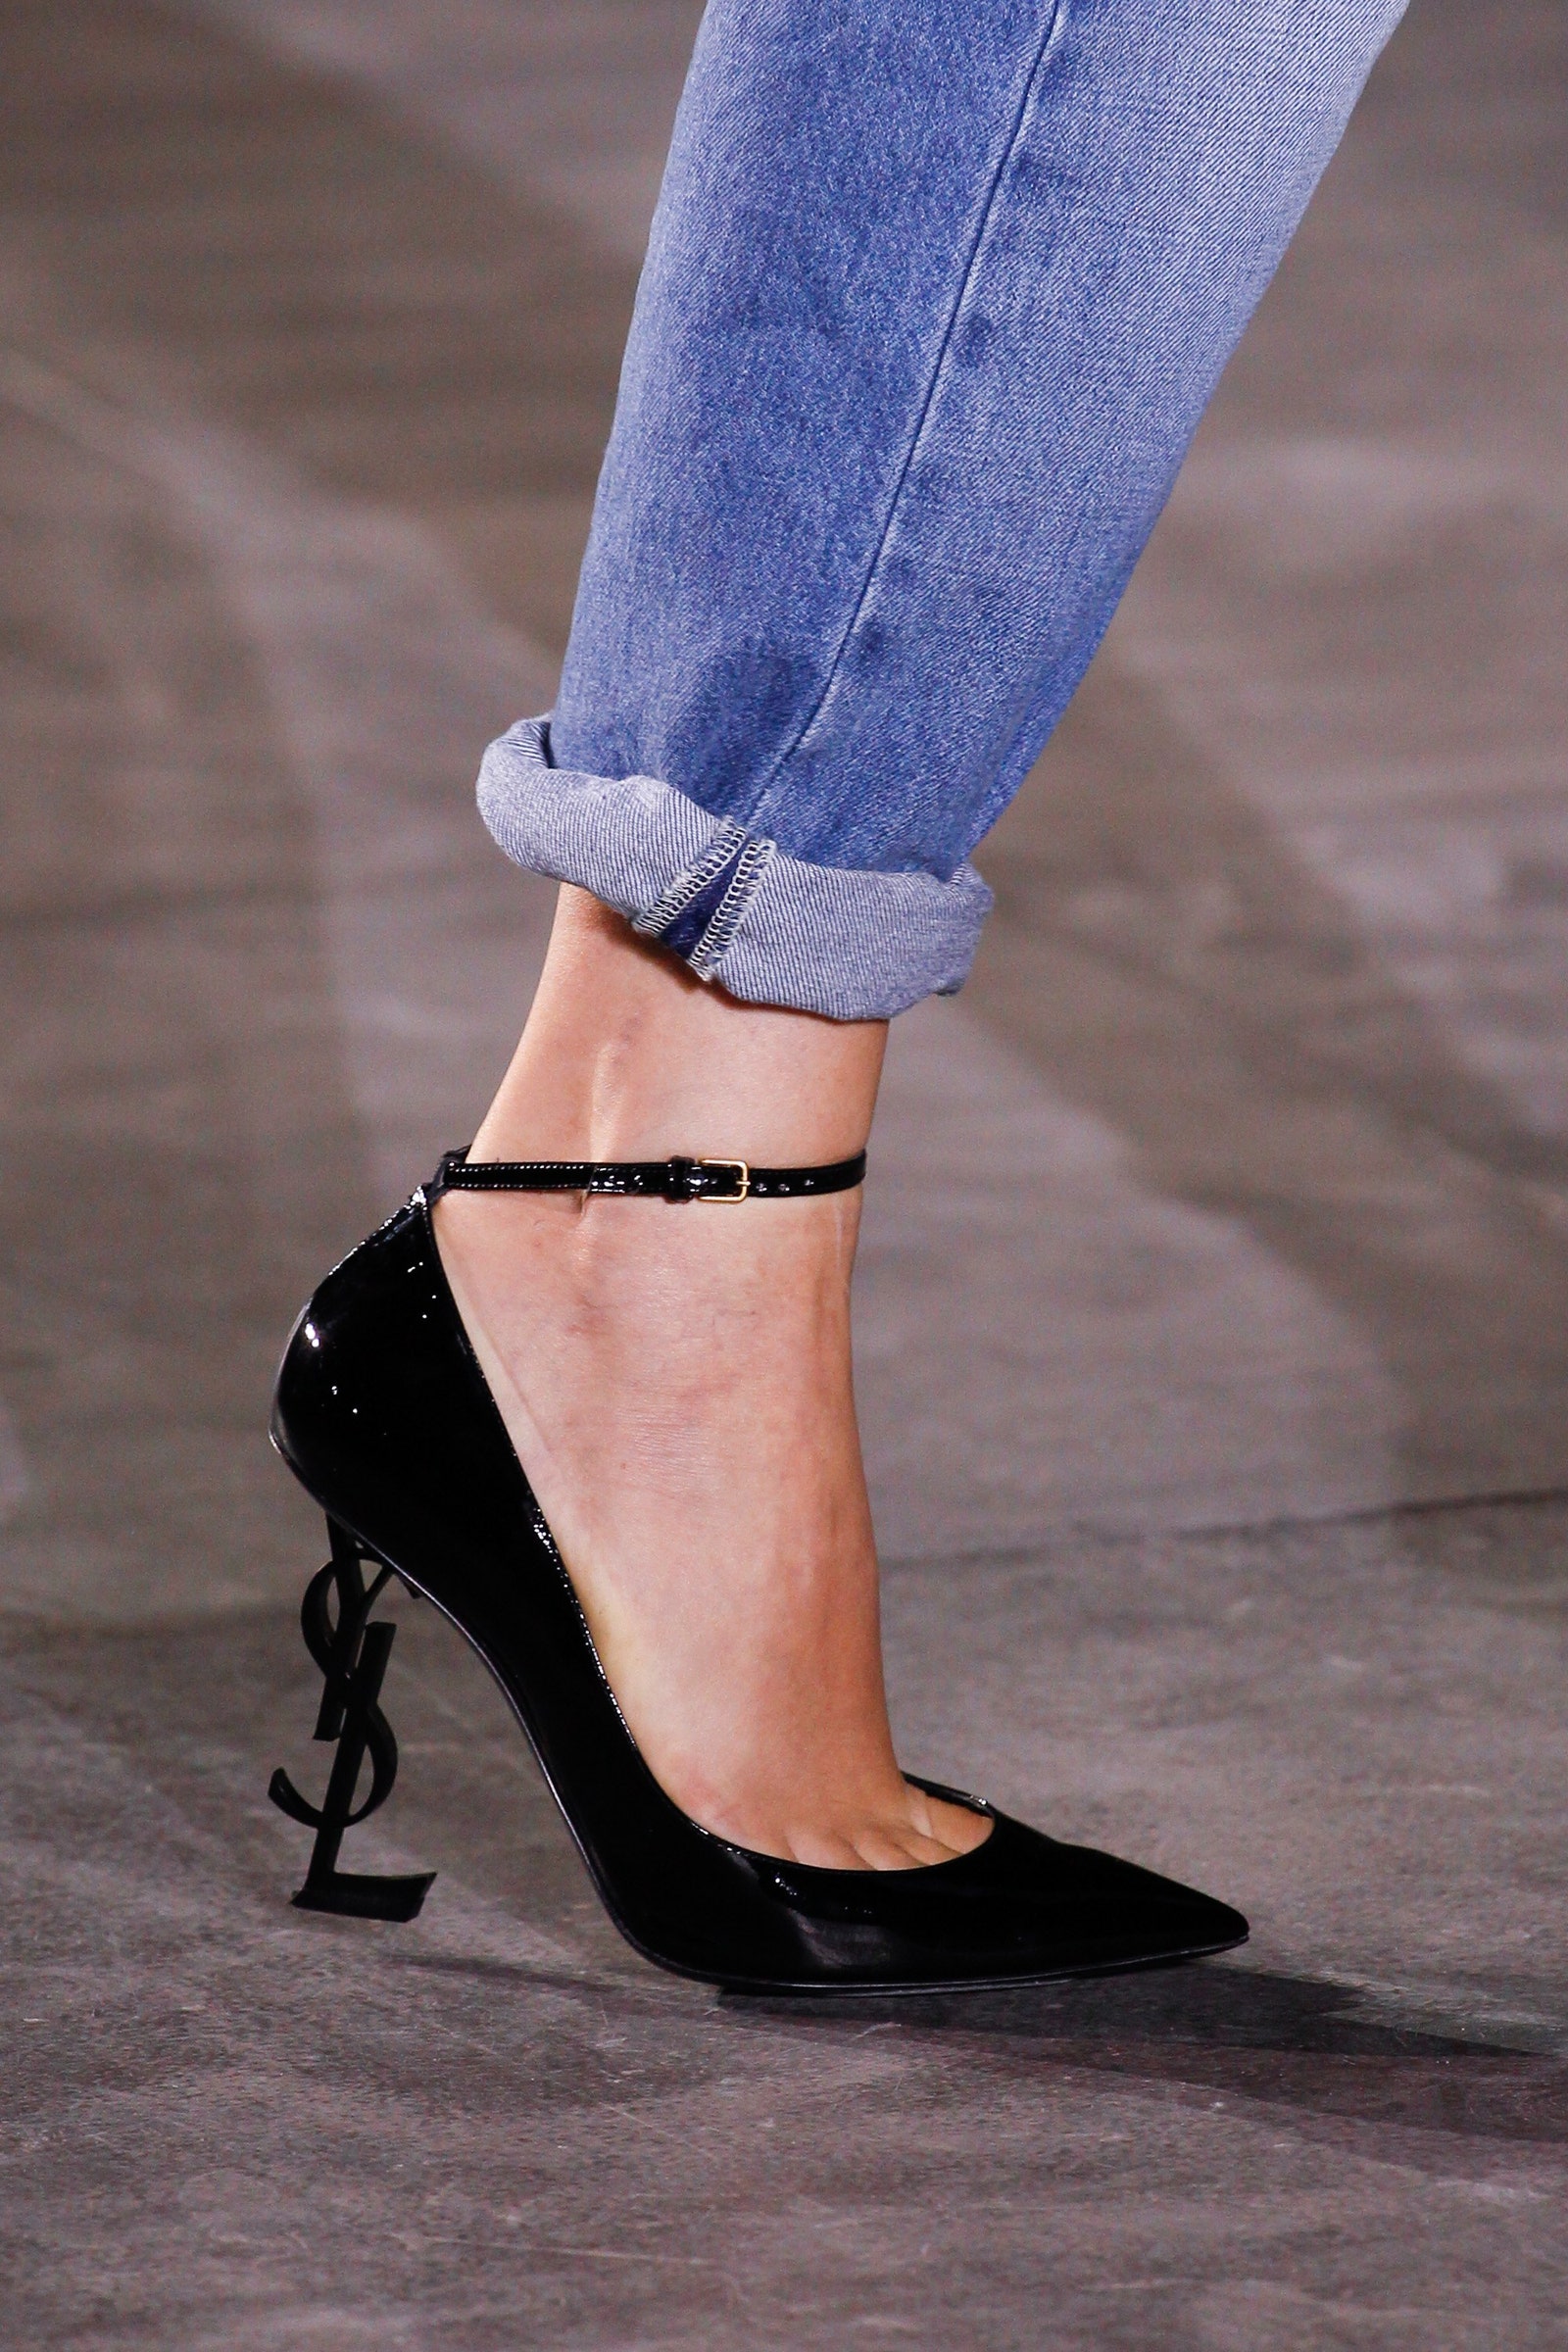 Ember reccomend designer high heels